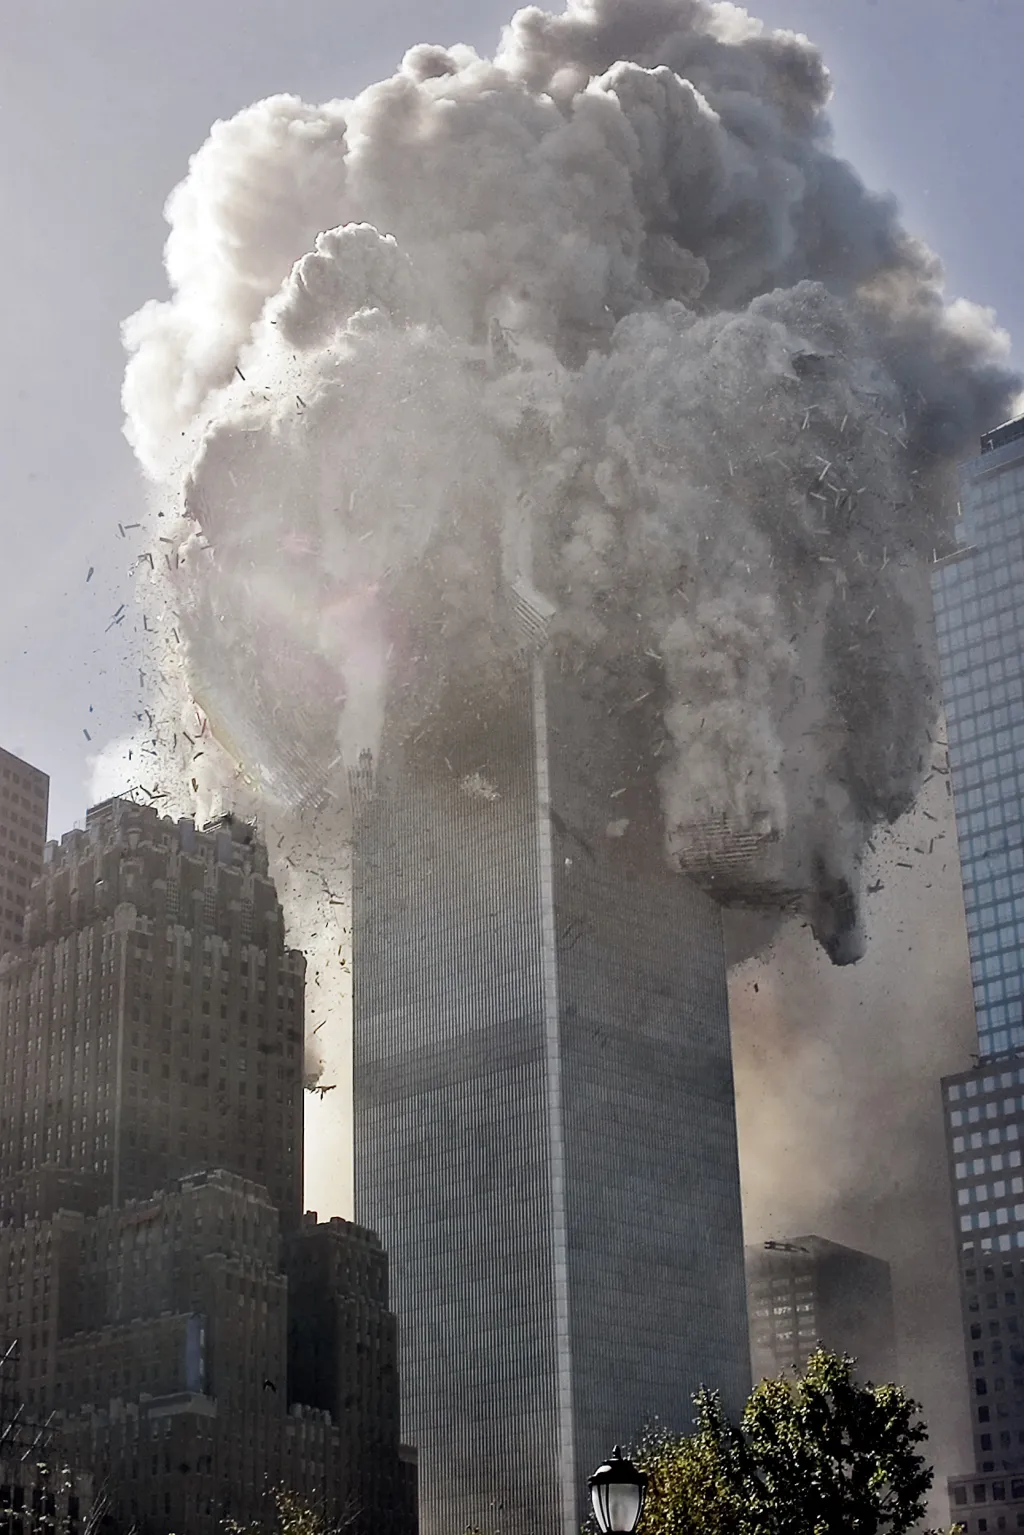 10:28:22: Severní věž WTC se zhroutila, hodinu a 42 minut po zásahu letadlem